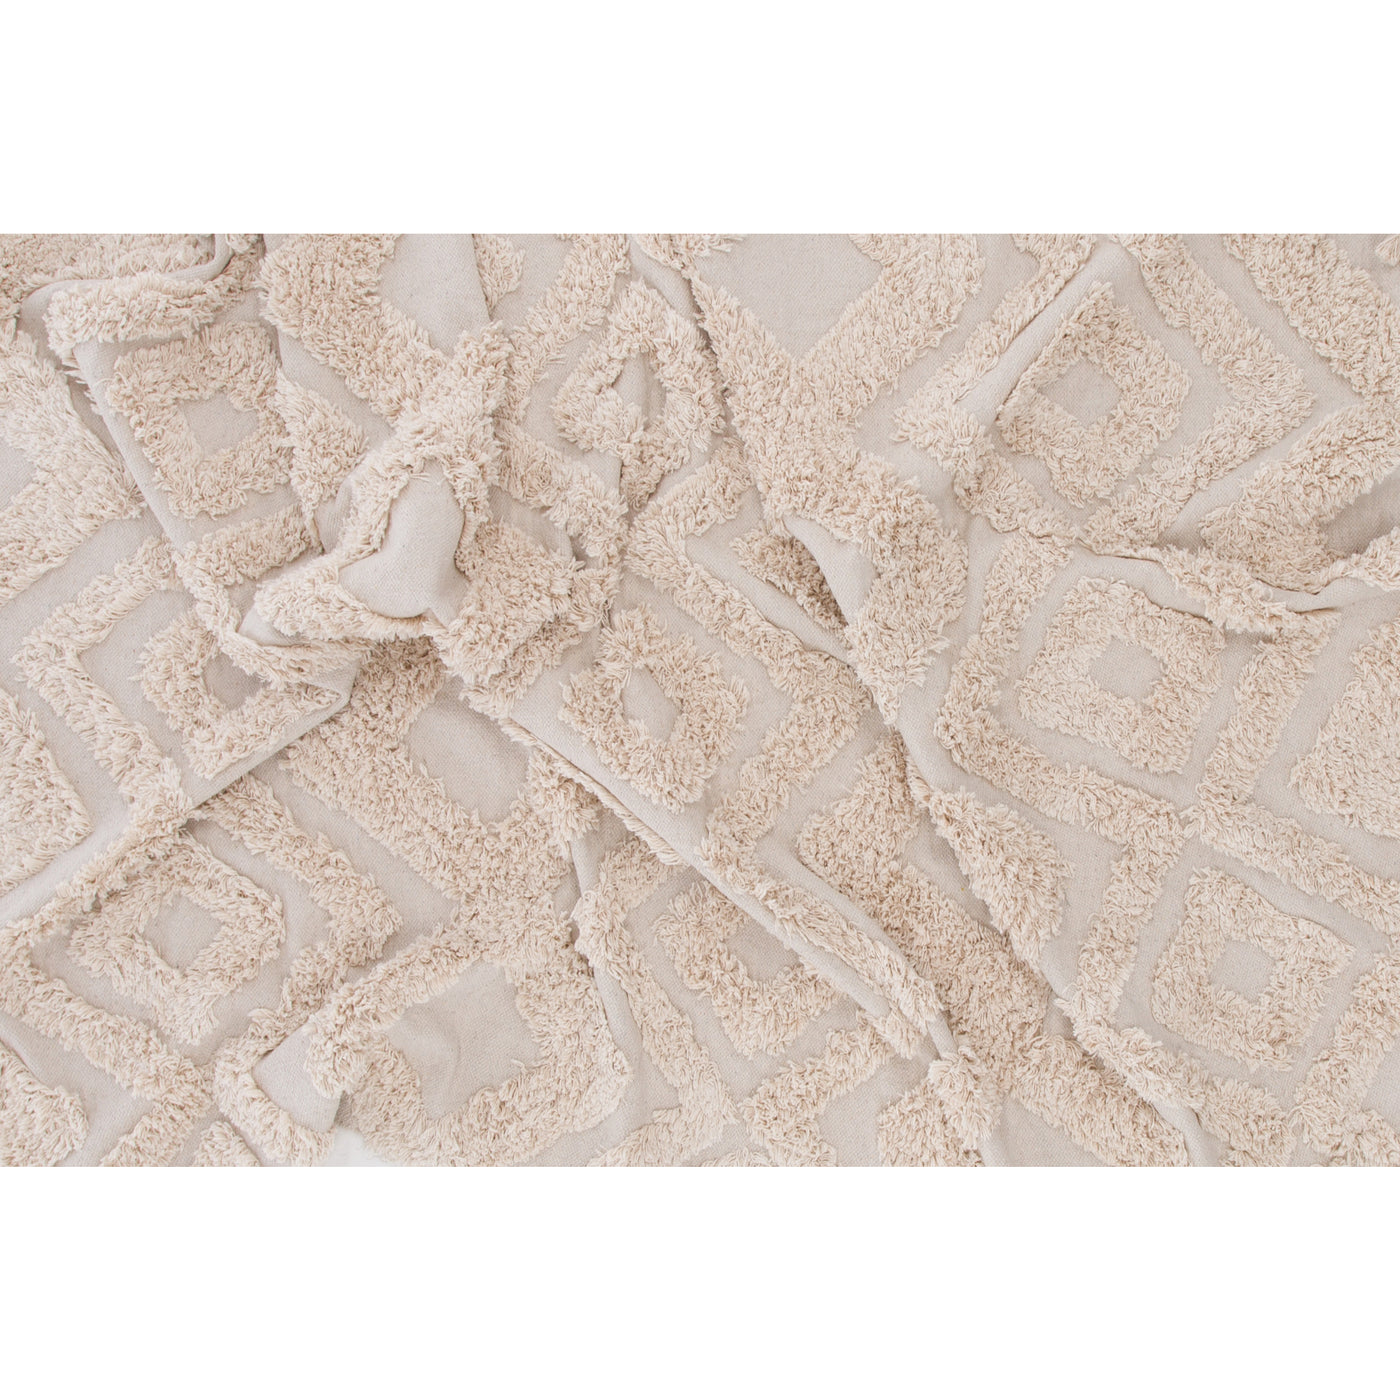 Ivanka Baumwolle – 160 x 230 – rechteckig – gebrochenes Weiß